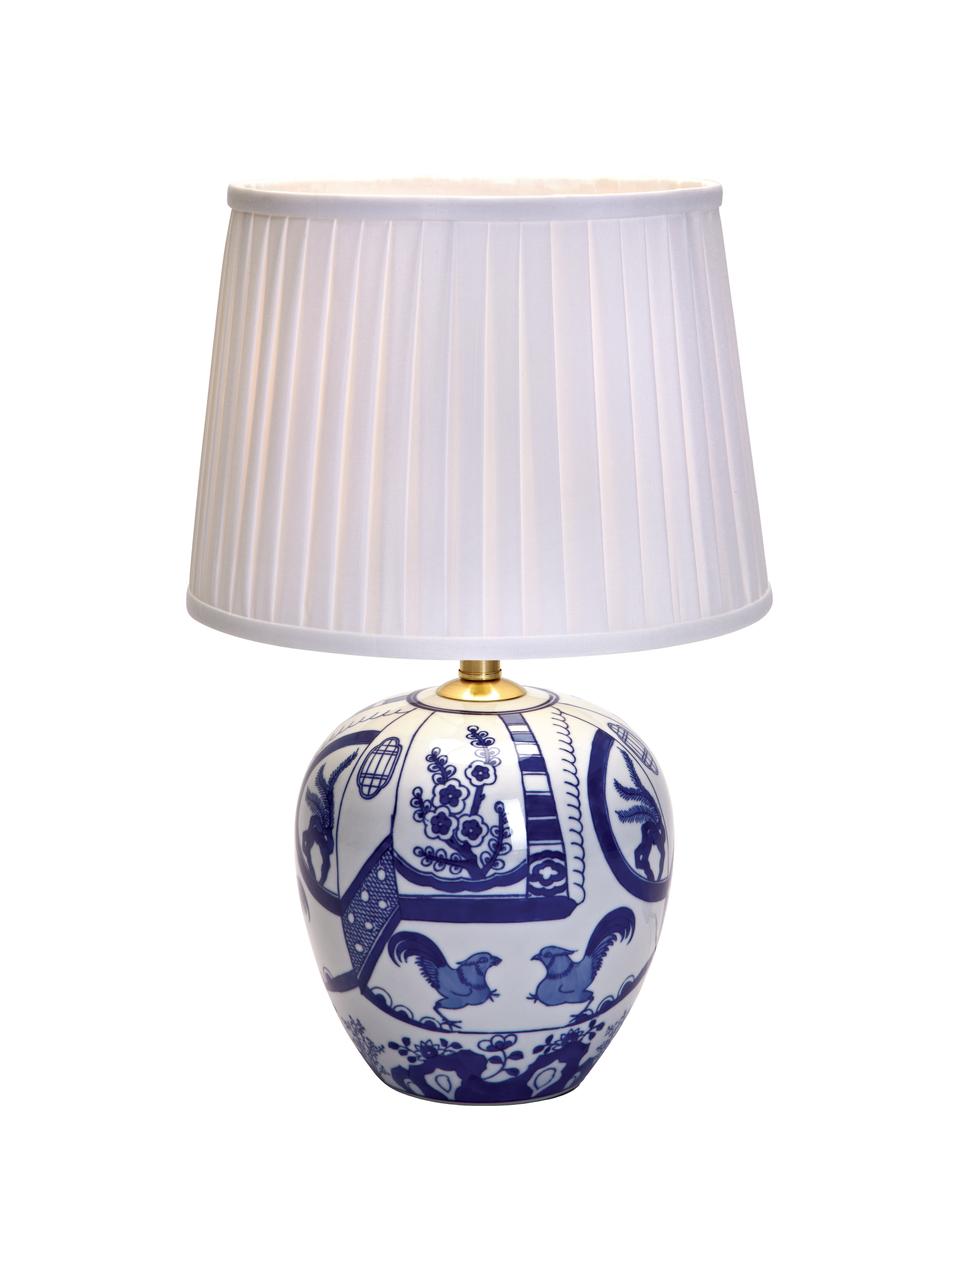 Keramische tafellamp Göteborg, Lampvoet: keramiek, Lampenkap: polyester, Lampvoet: blauw, wit. Lampenkap: wit, Ø 31 x H 48 cm